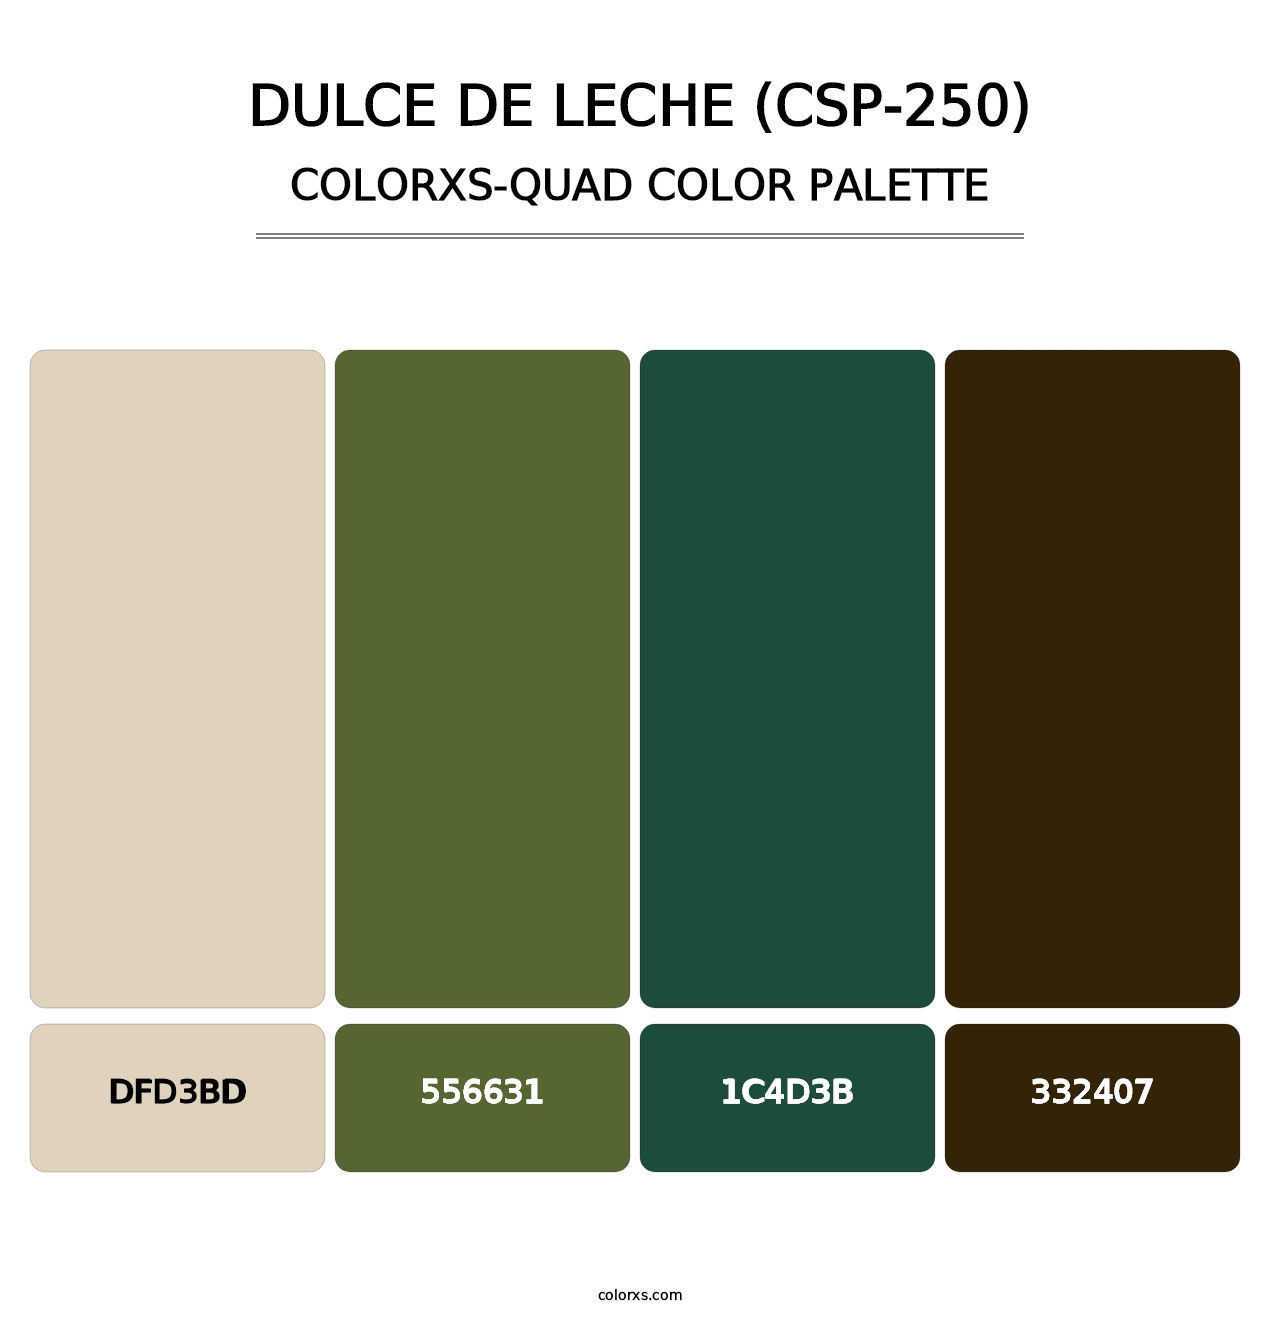 Dulce de Leche (CSP-250) - Colorxs Quad Palette